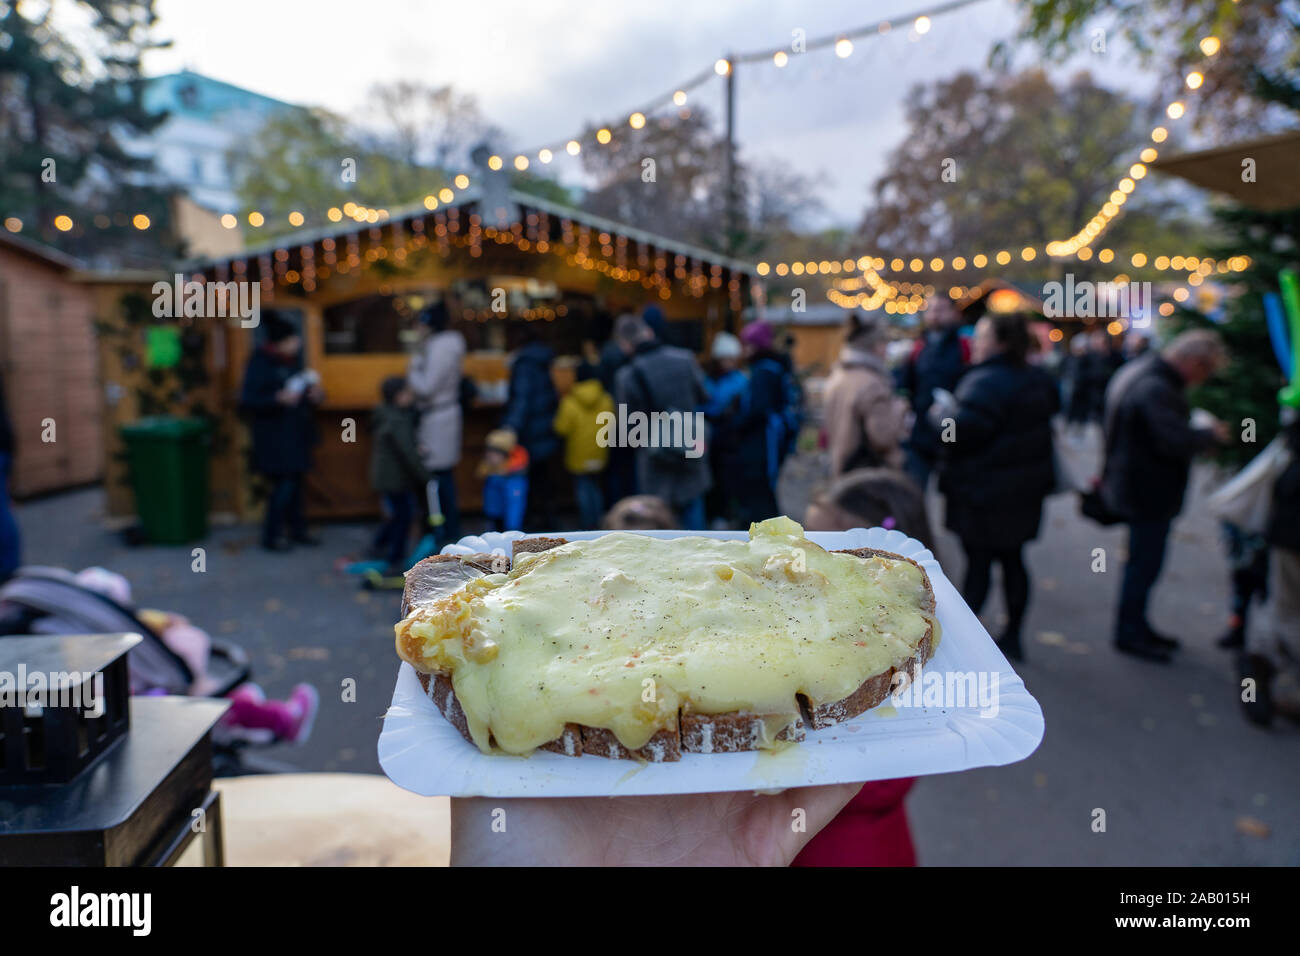 Traditionelle Weihnachten Winter Markt Lebensmittel in Deutschland Schweiz und Österreich Raclette Käse auf einer Scheibe Brot Stockfoto